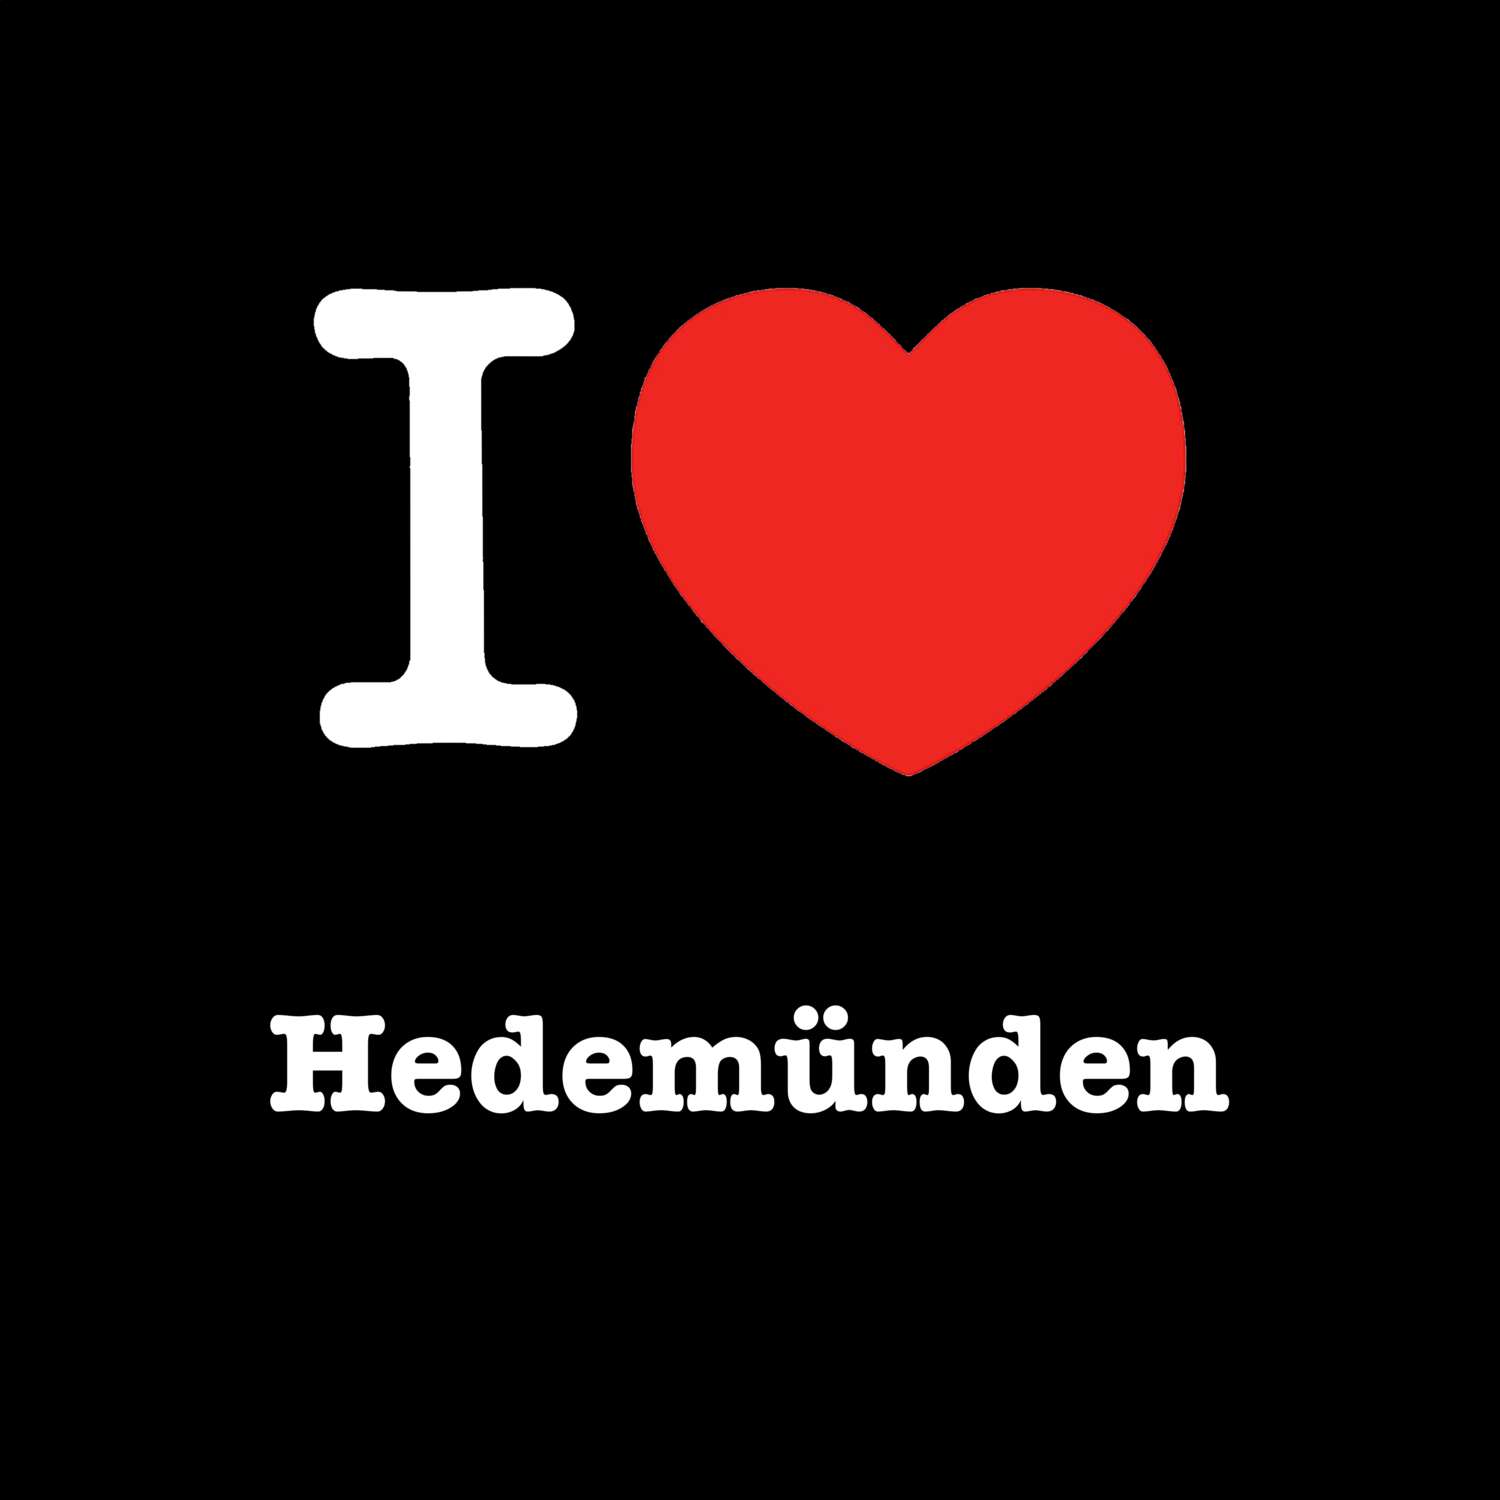 Hedemünden T-Shirt »I love«